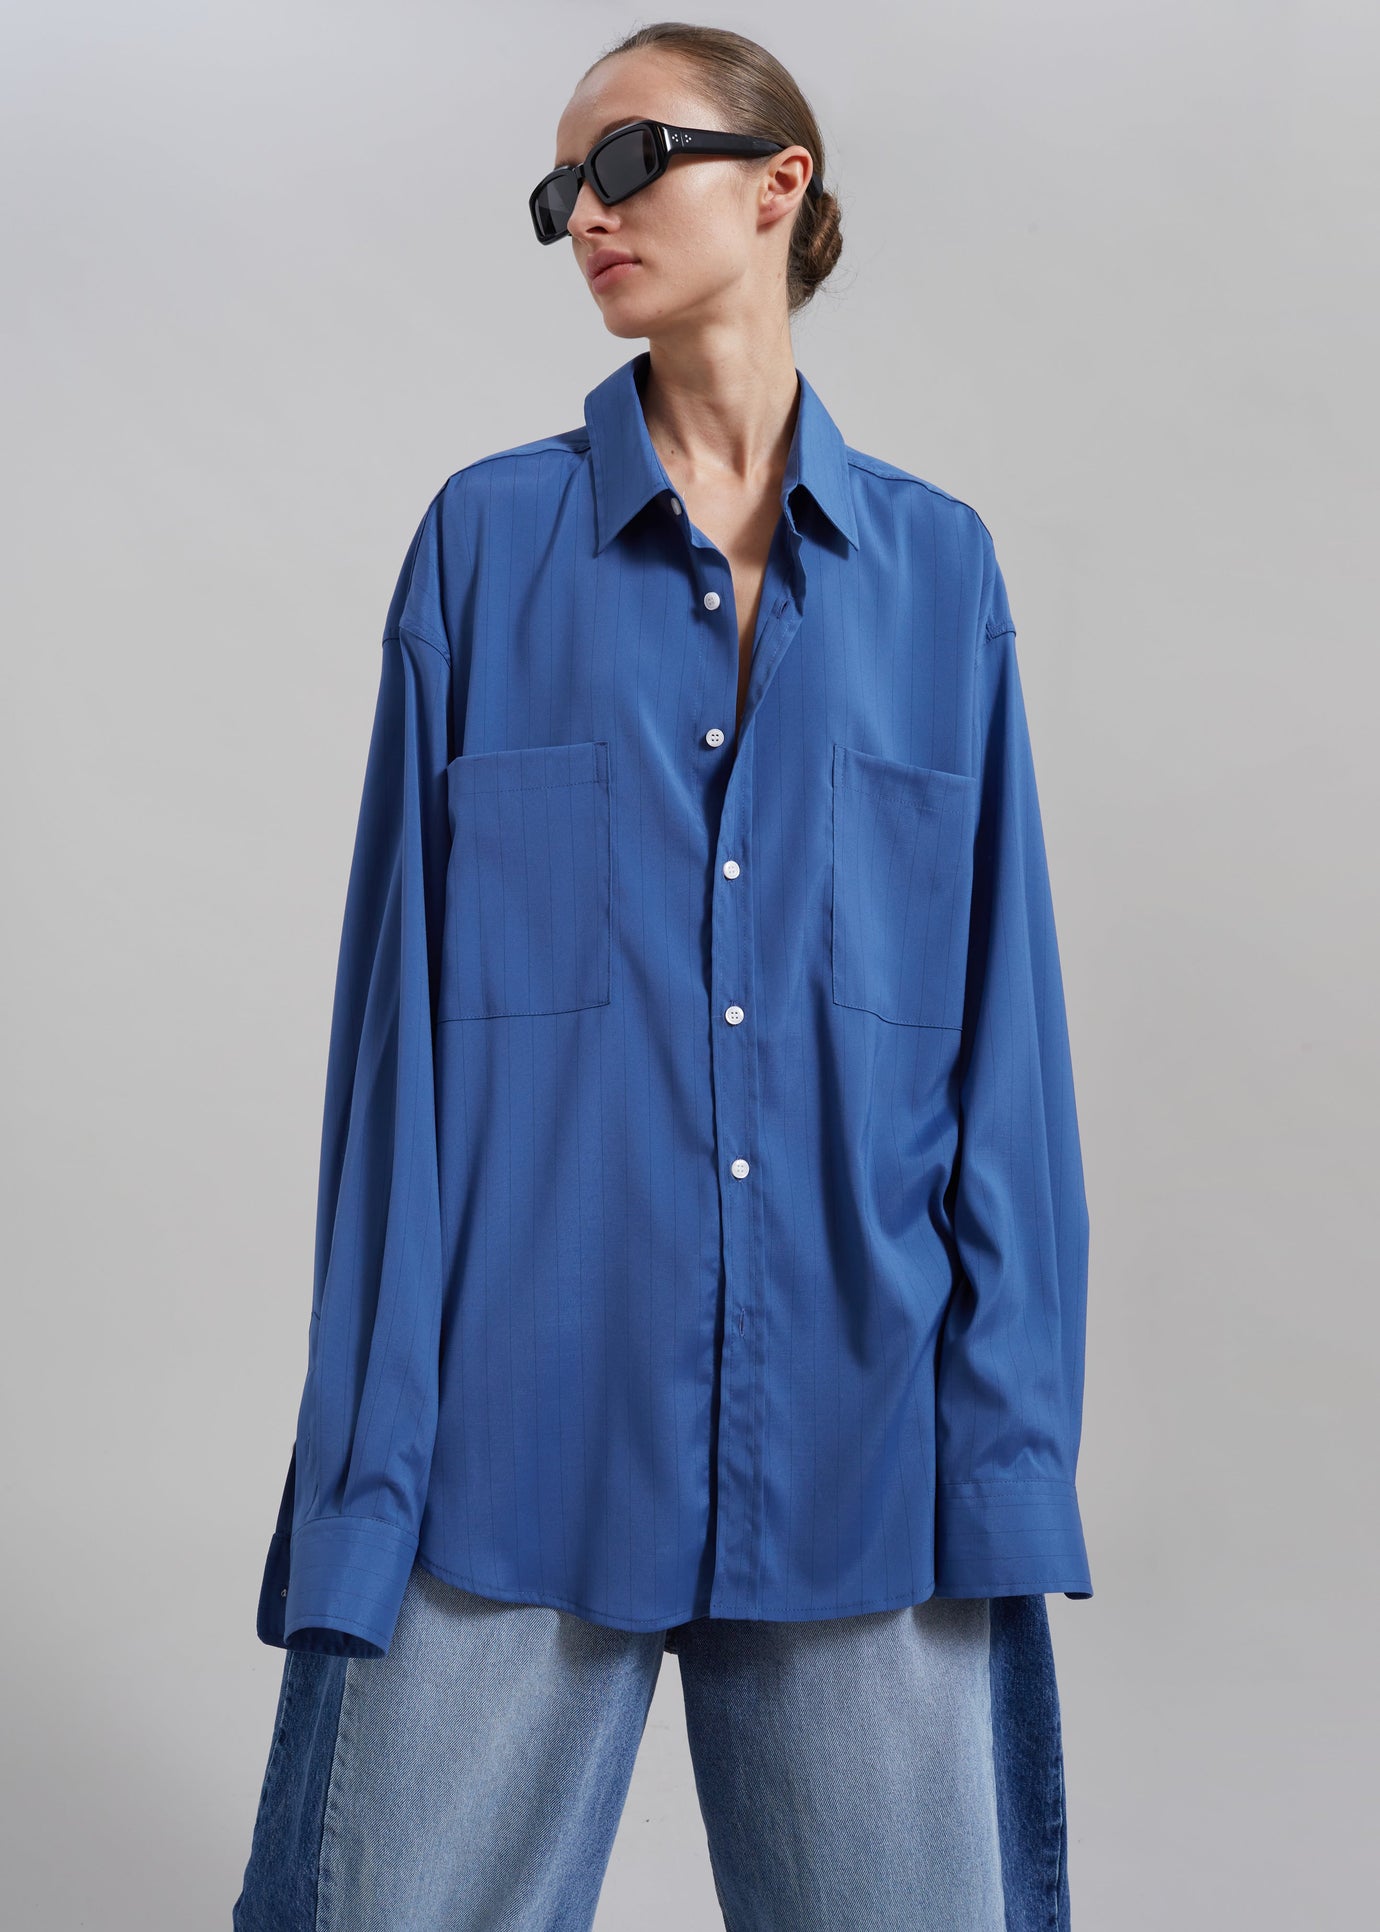 Elowen Button Up Shirt - Blue Stripe - 1